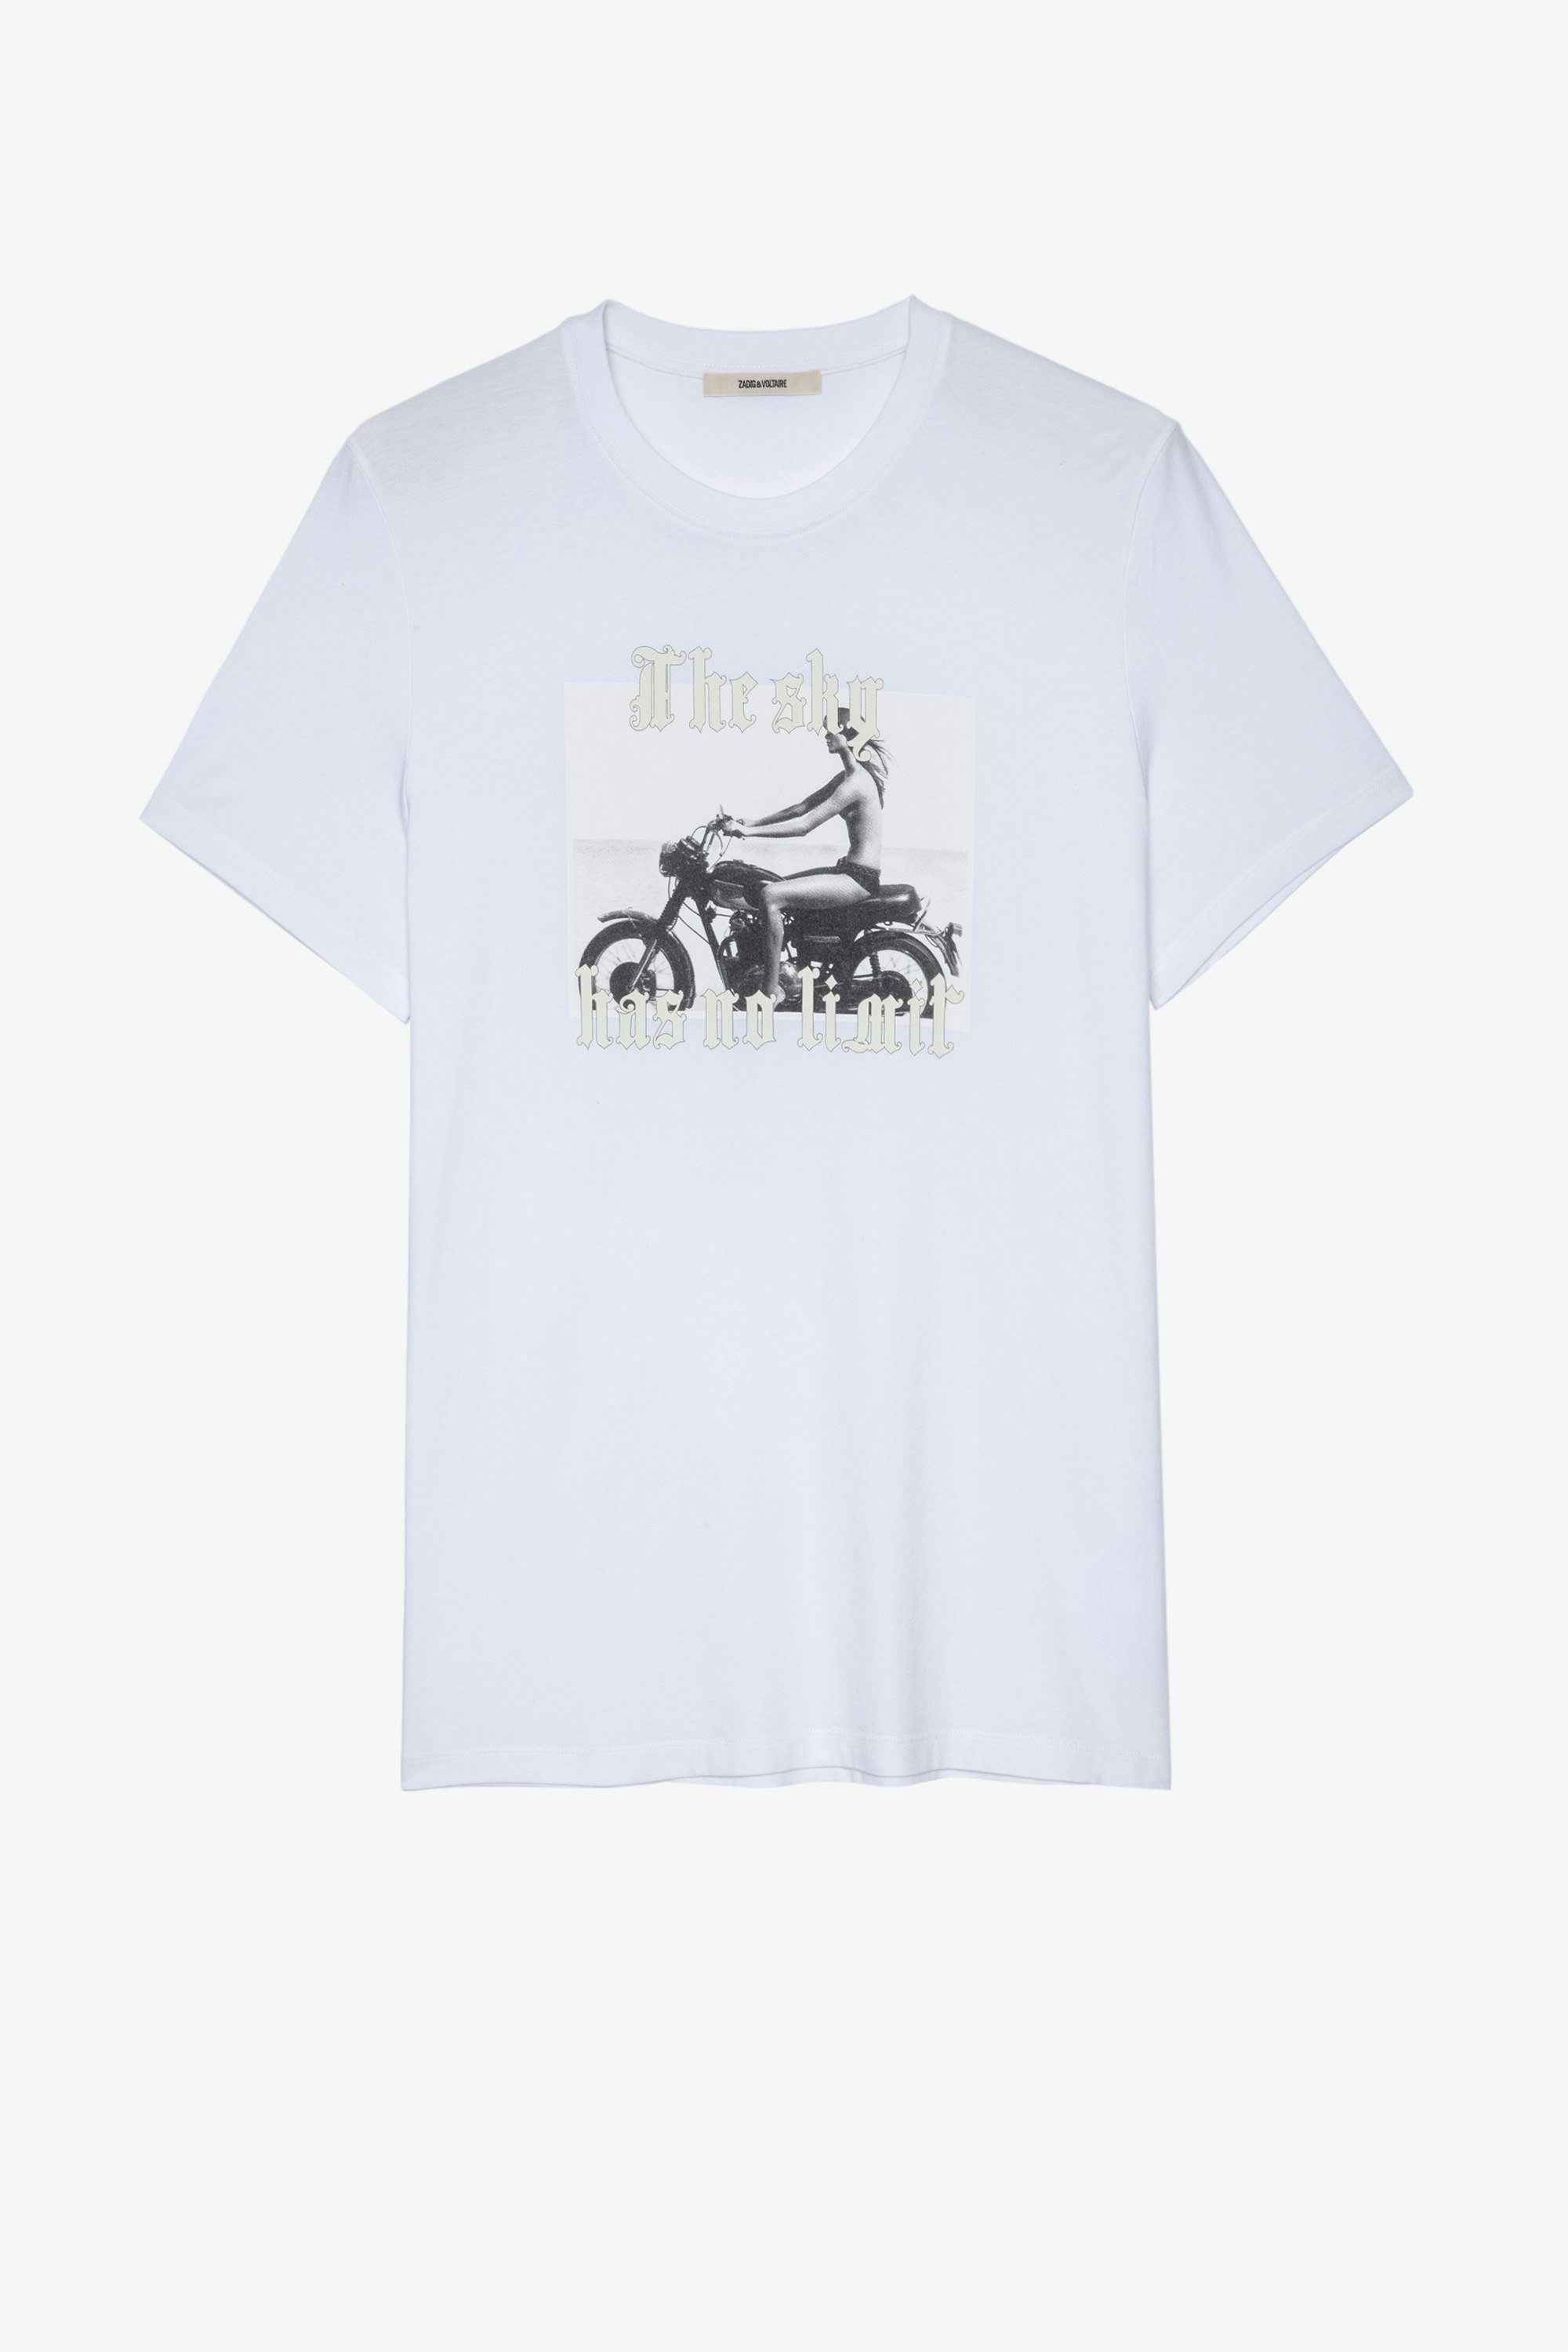 Camiseta Ted Photoprint Camiseta blanca de algodón para hombre con estampado fotográfico